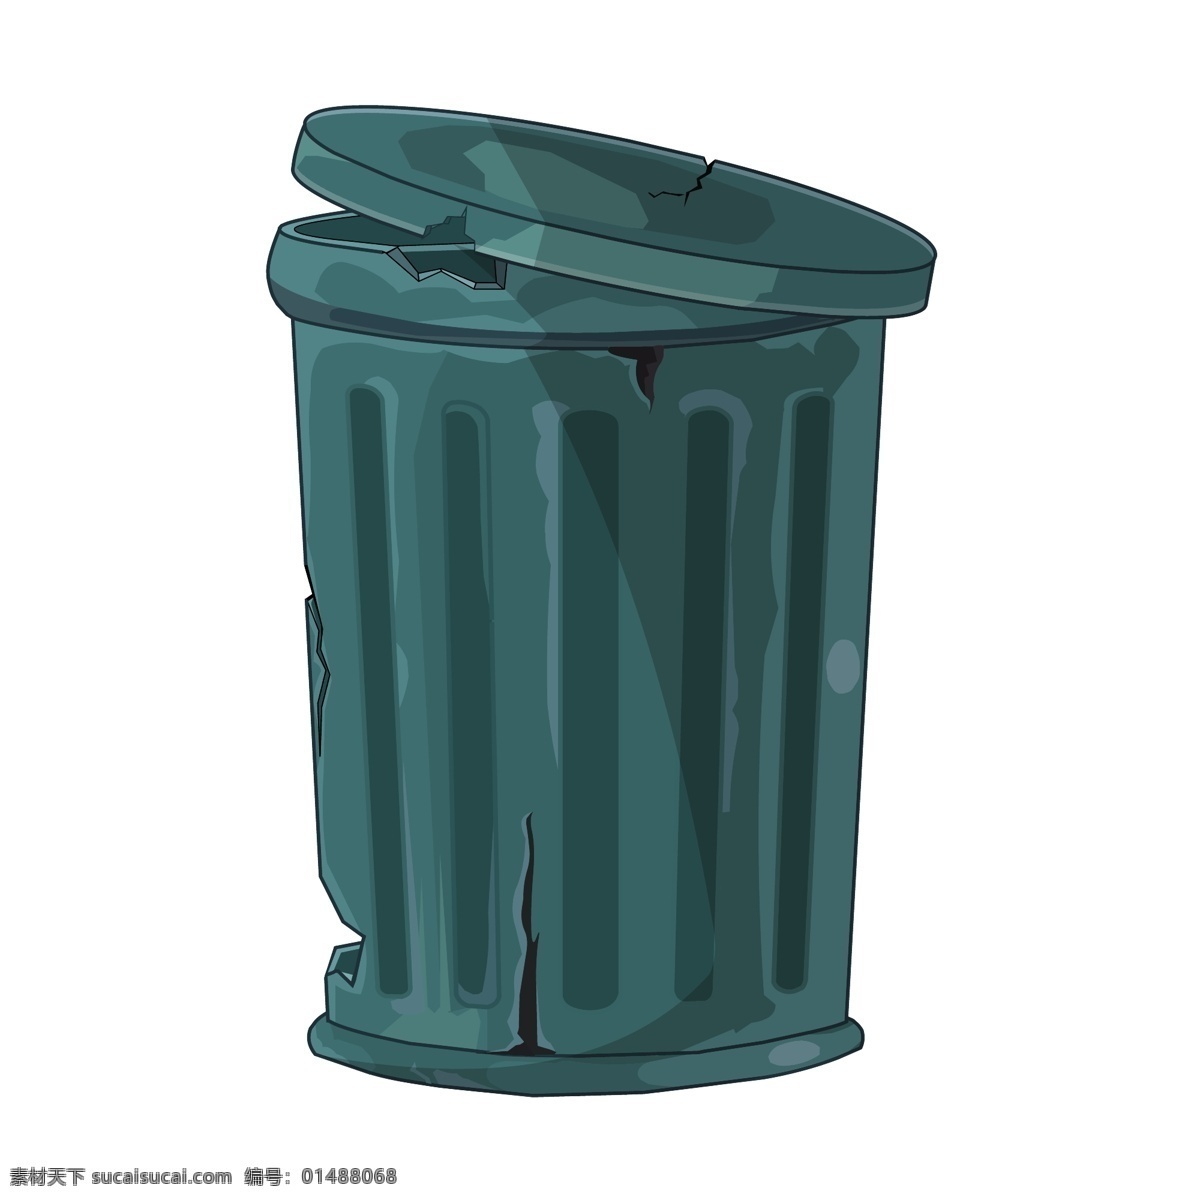 创意 垃圾桶 插图 绿色垃圾桶 垃圾桶插图 垃圾桶图标 卡通垃圾桶 矢量垃圾桶 环保主题 生活百科 矢量素材 白色